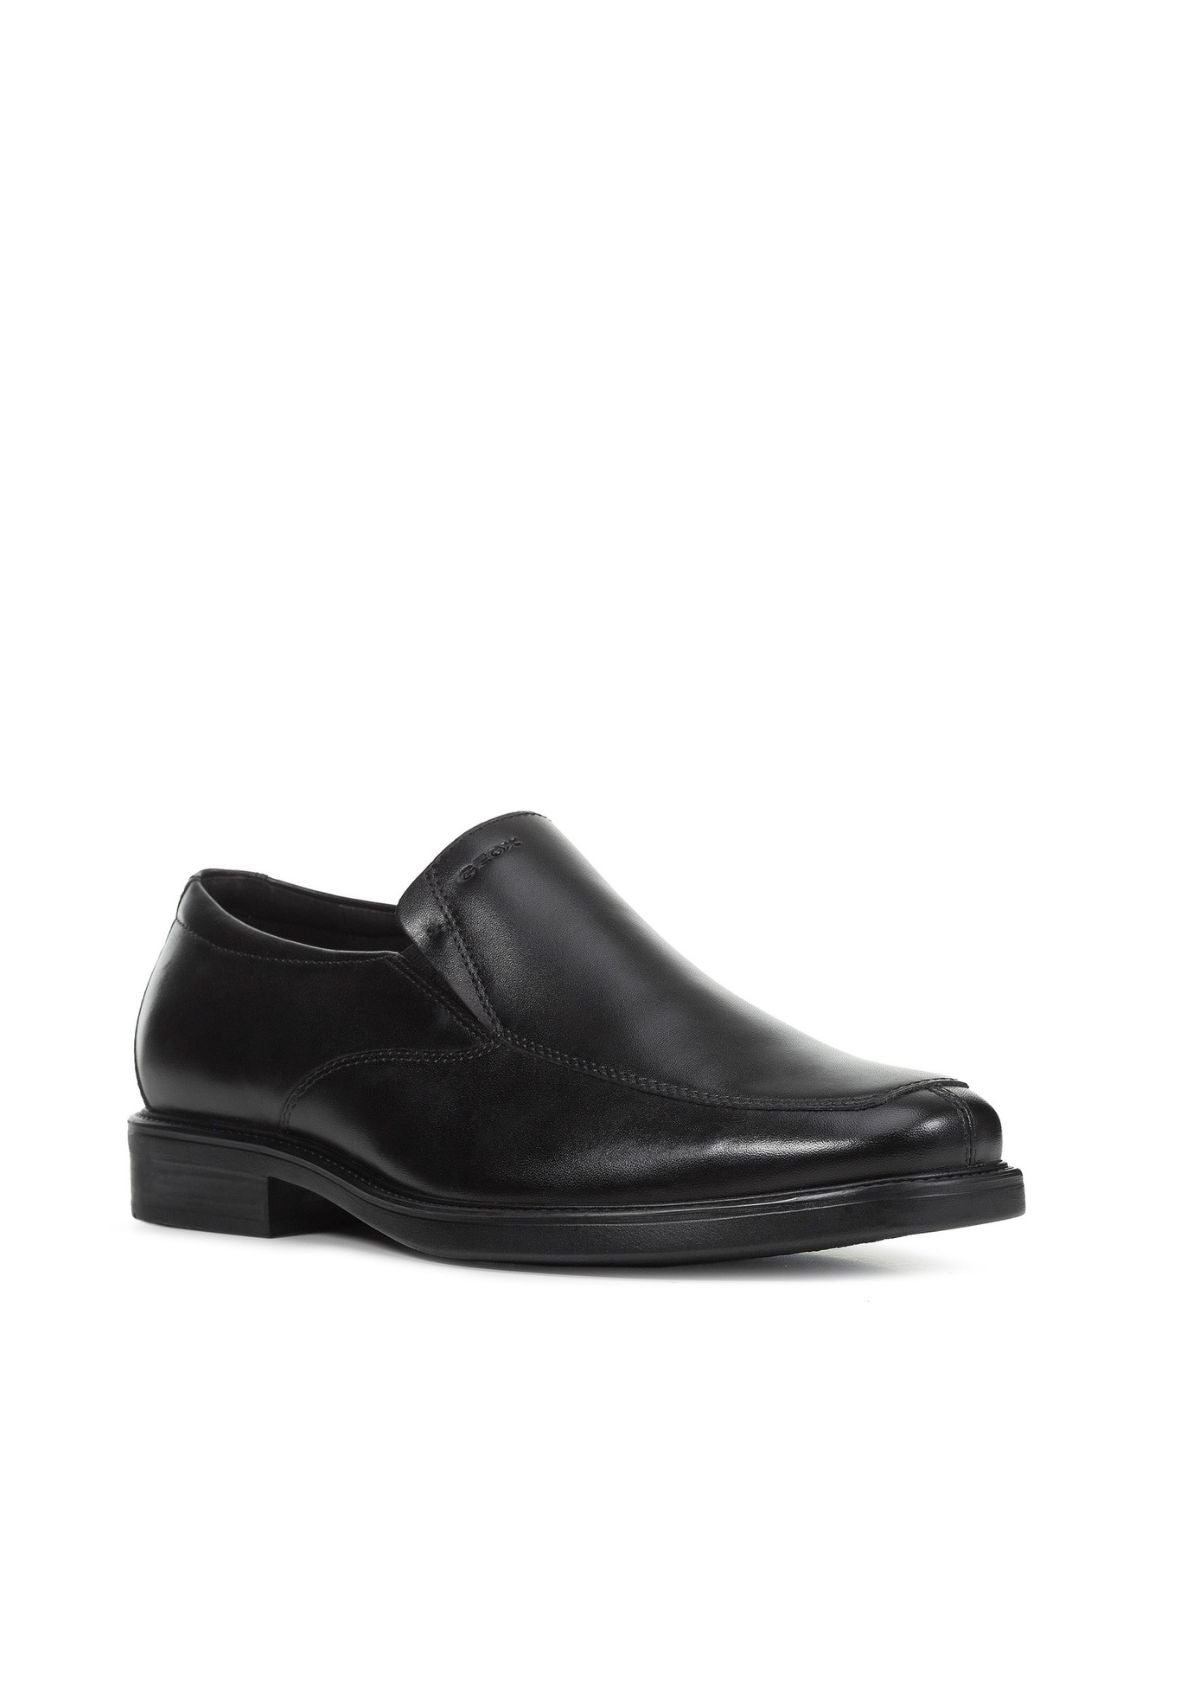 Geox Men Shoes BRANDOFF Slip-On Black side front